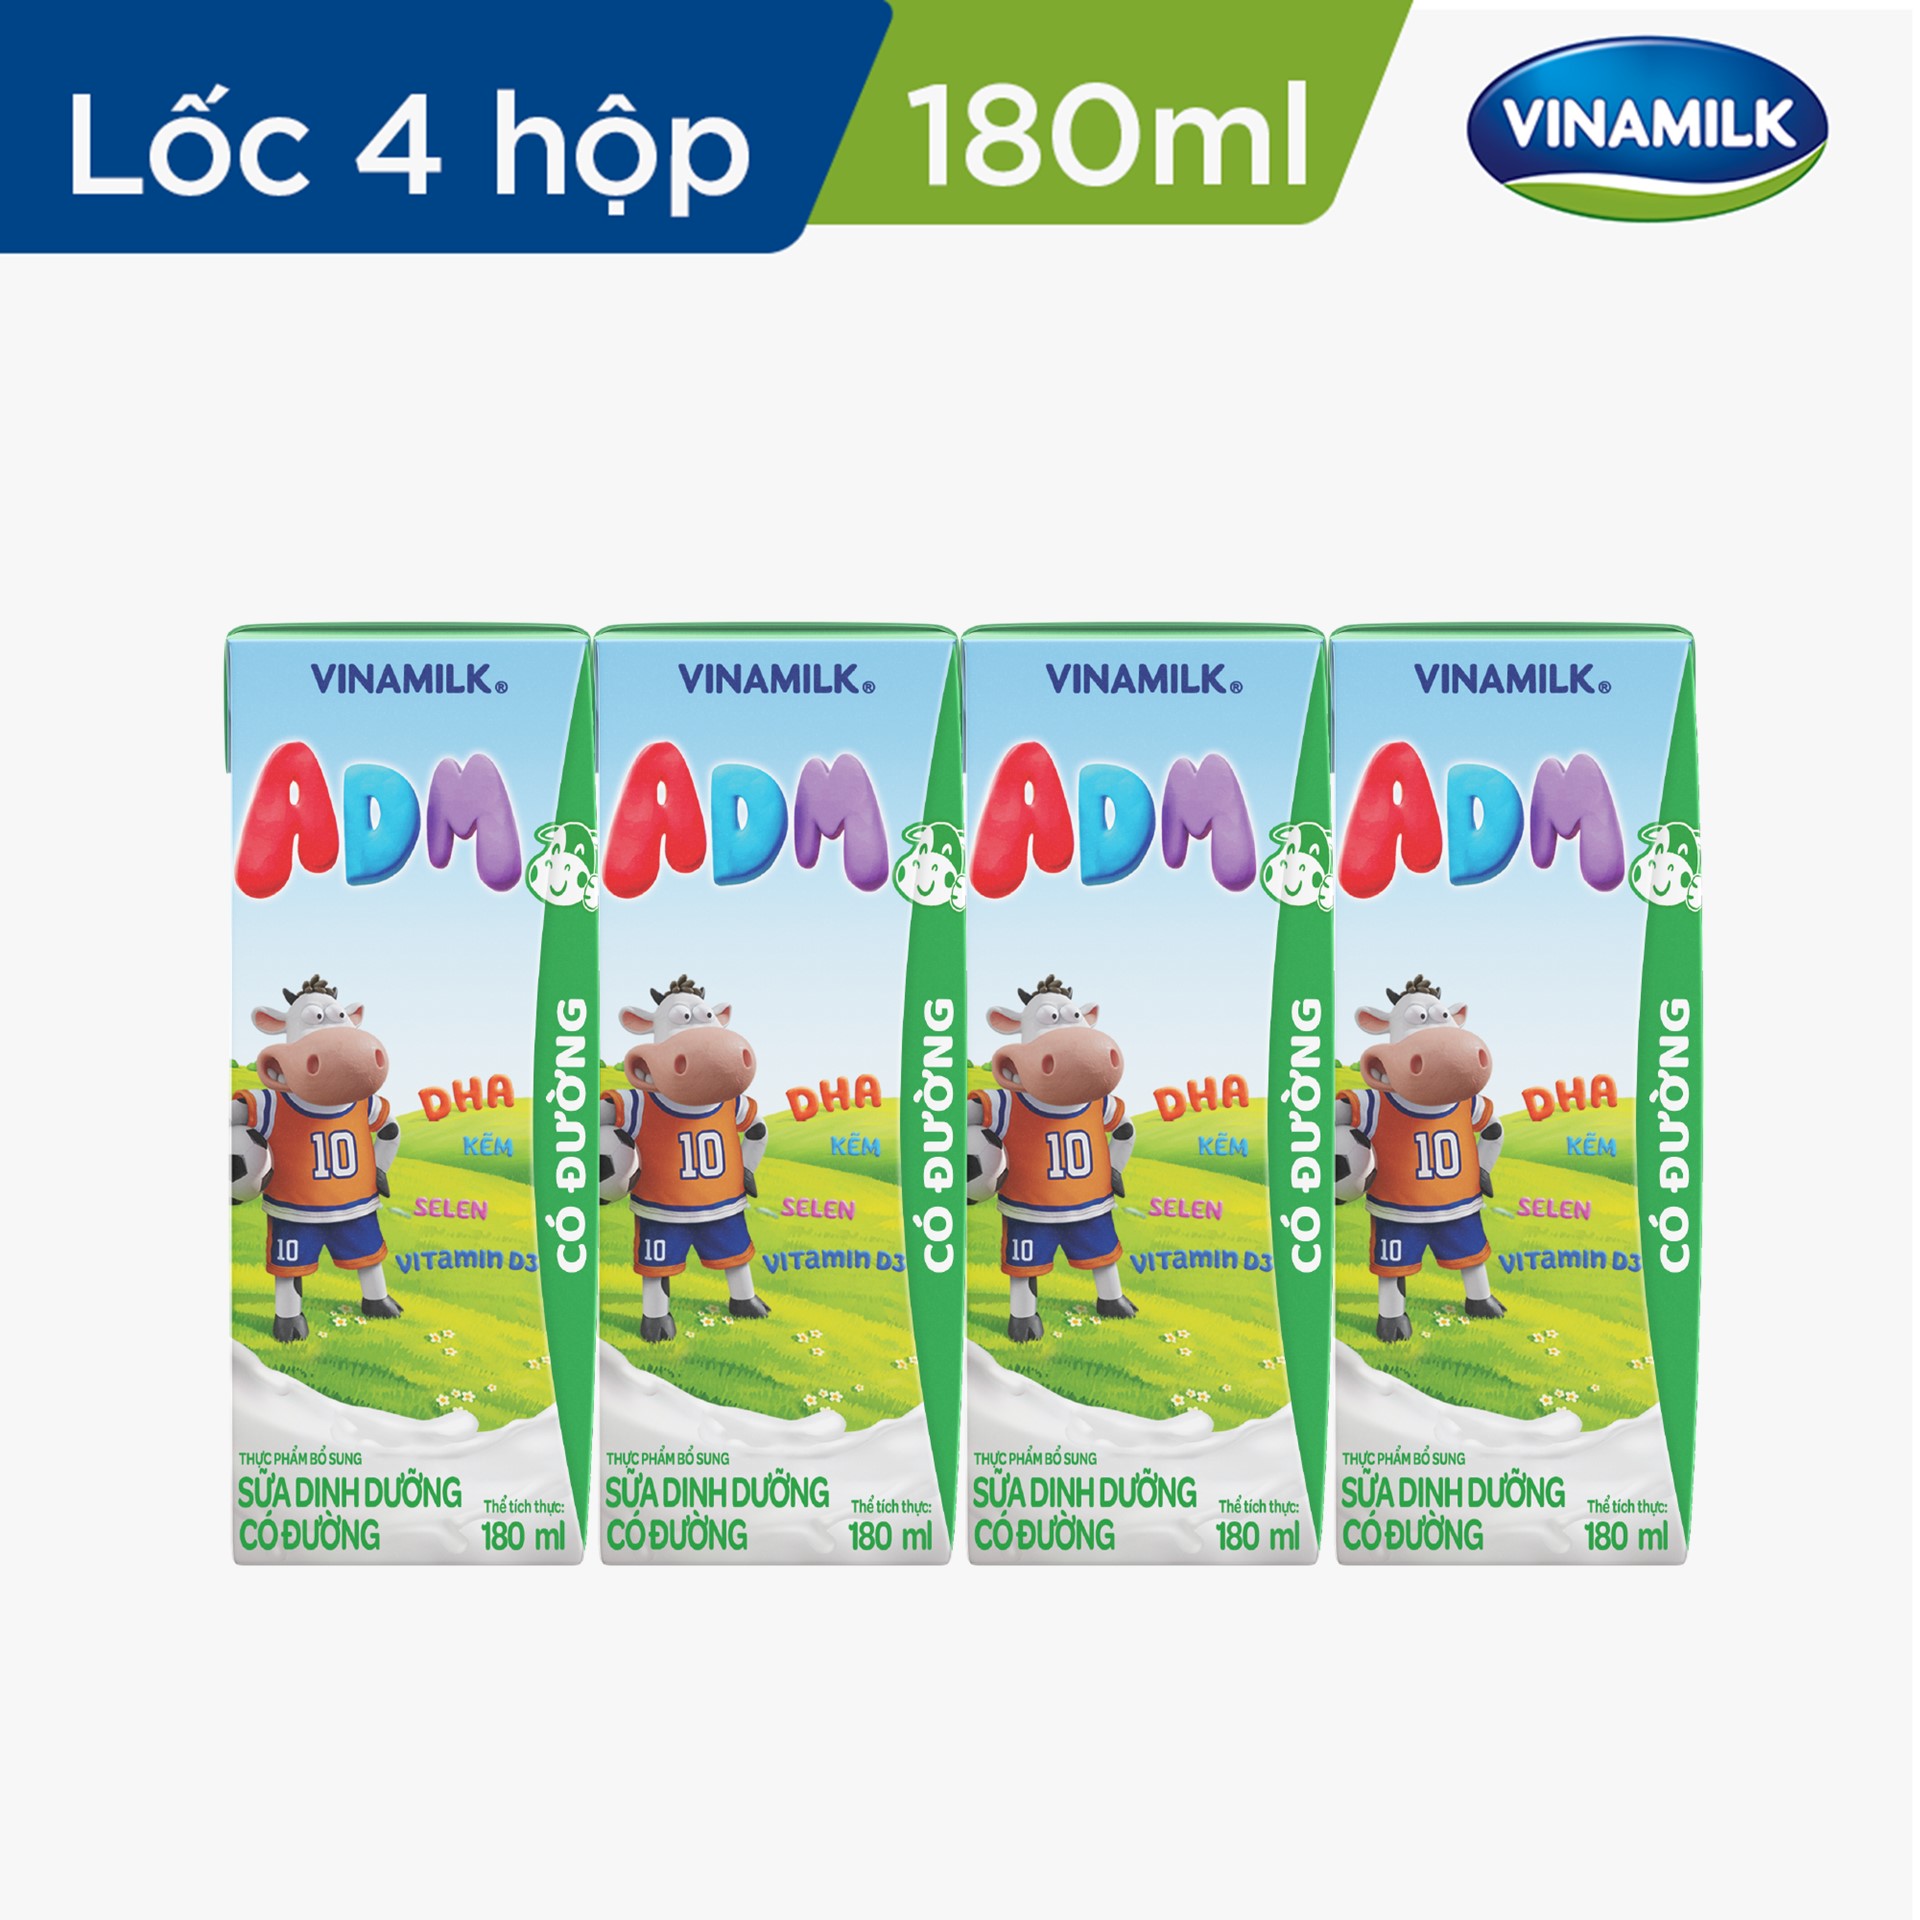 Sữa dinh dưỡng có đường Vinamilk ADM - Lốc 4 hộp 180ml